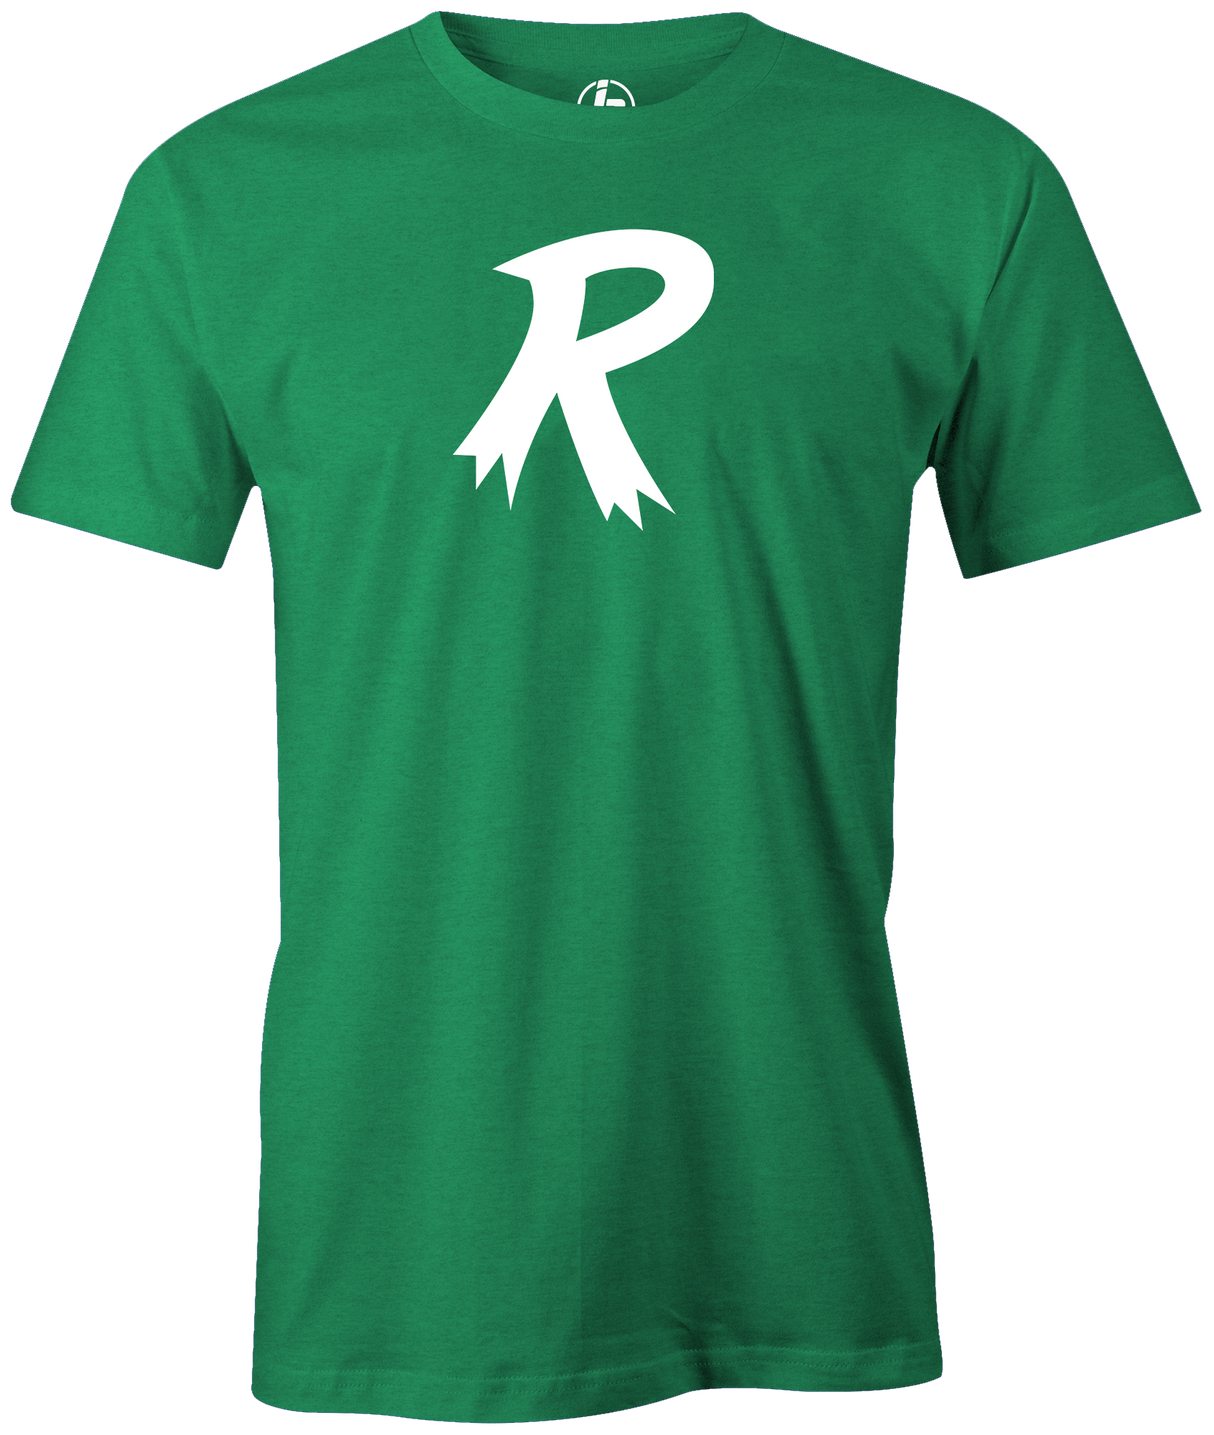 Radical "R" T-shirt